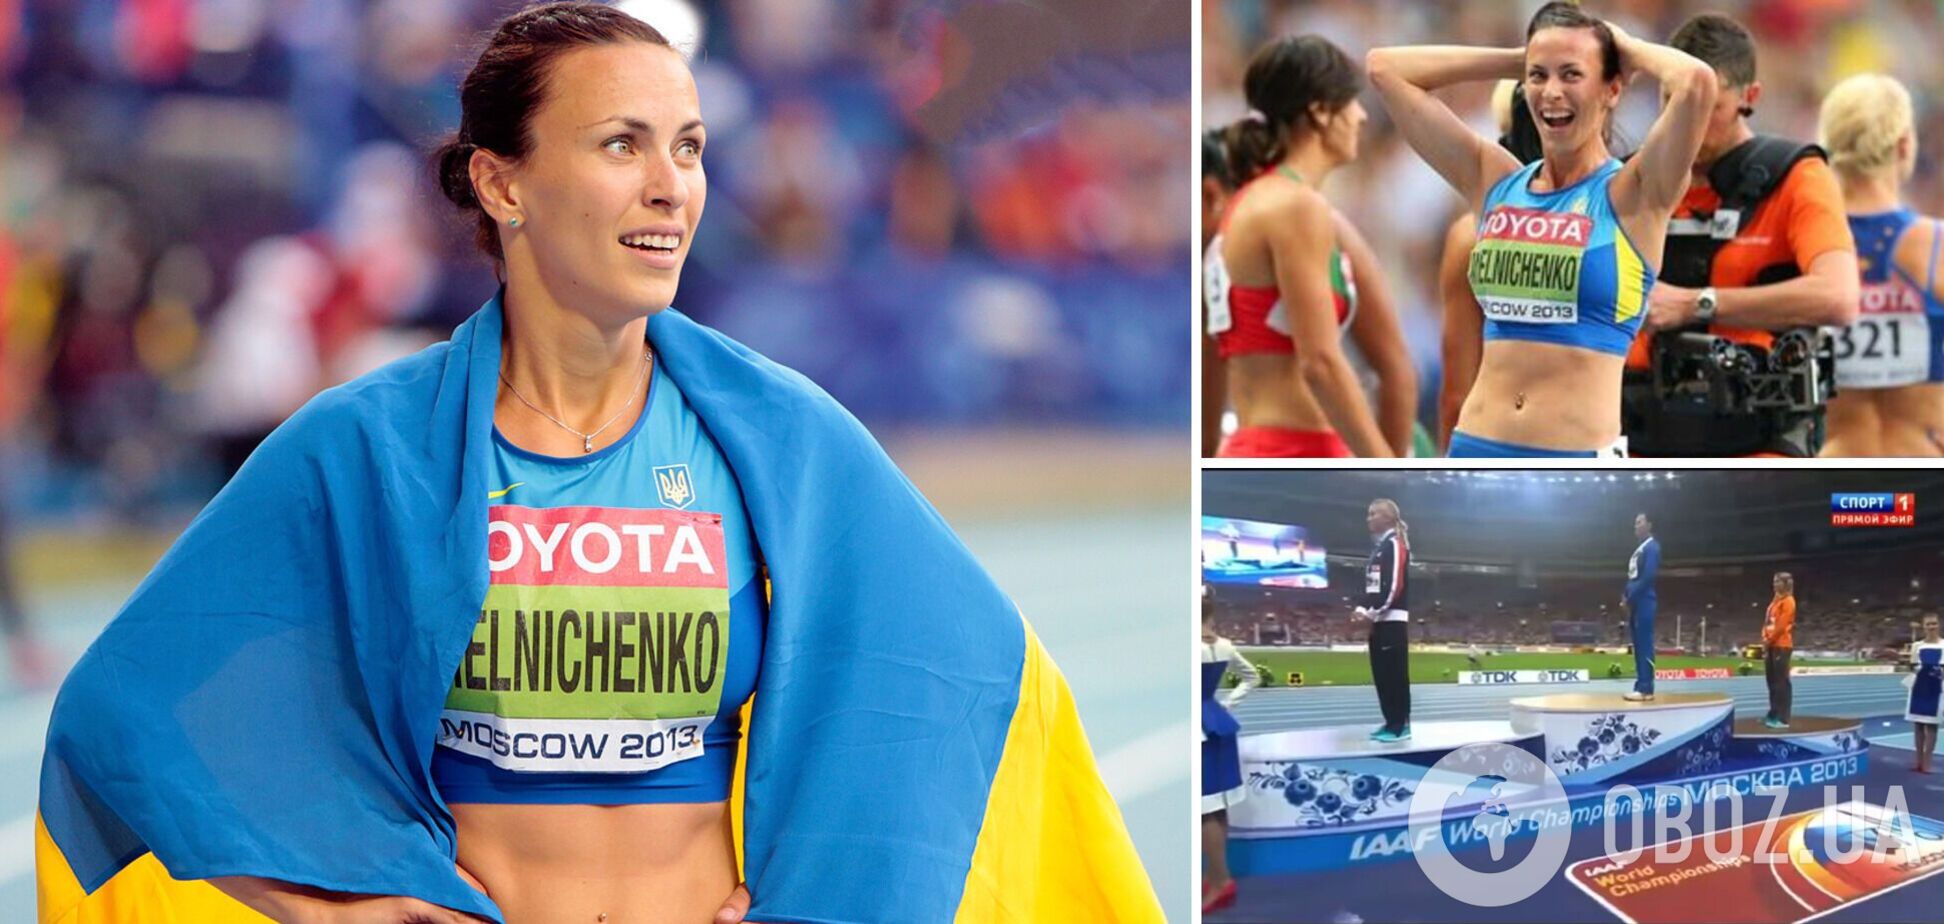 Наша легкоатлетка змусила московські 'Лужники' слухати гімн України після перемоги на чемпіонаті світу у Росії. Як це було